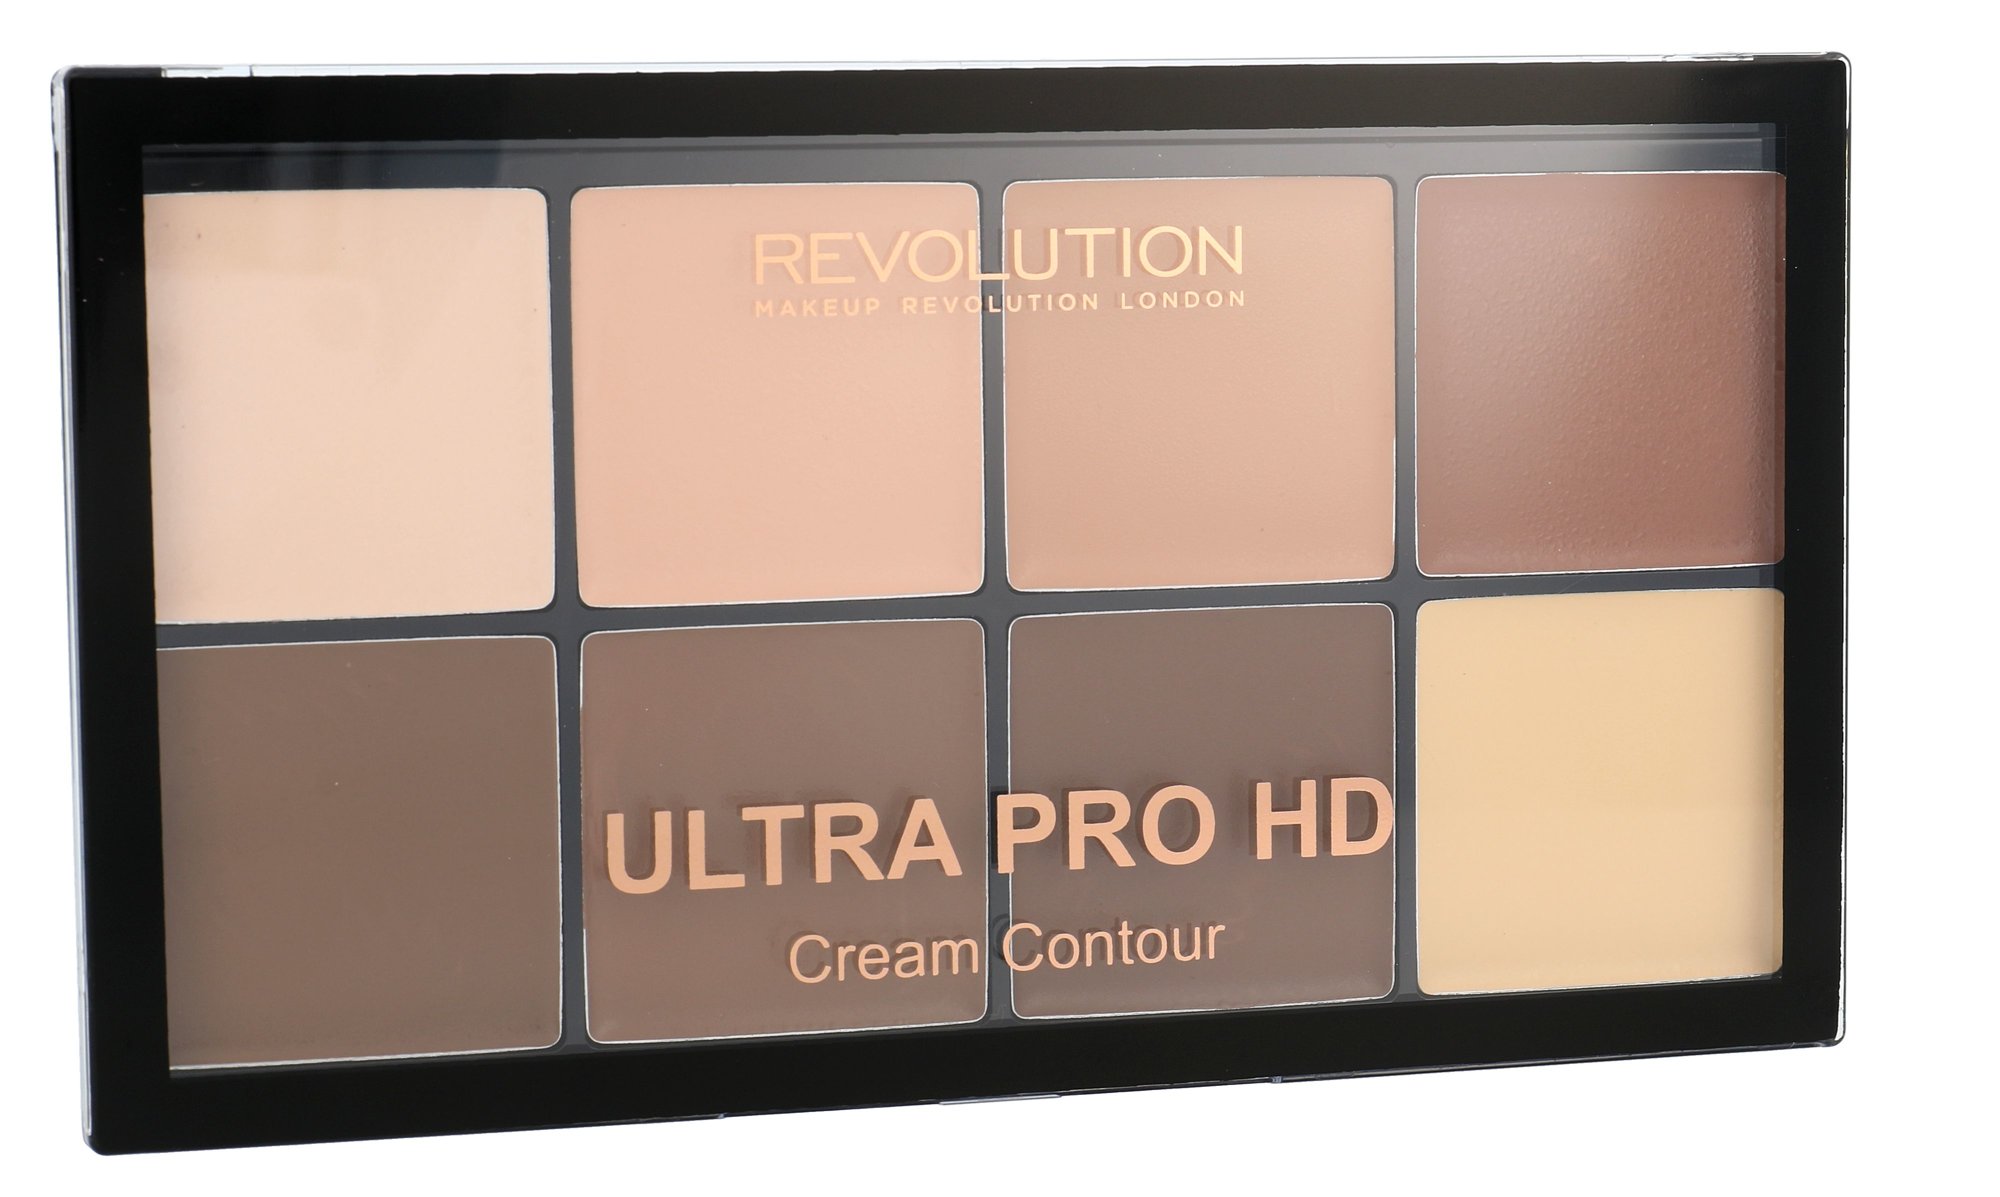 Makeup Revolution London Ultra Pro HD Cream Contour Palette